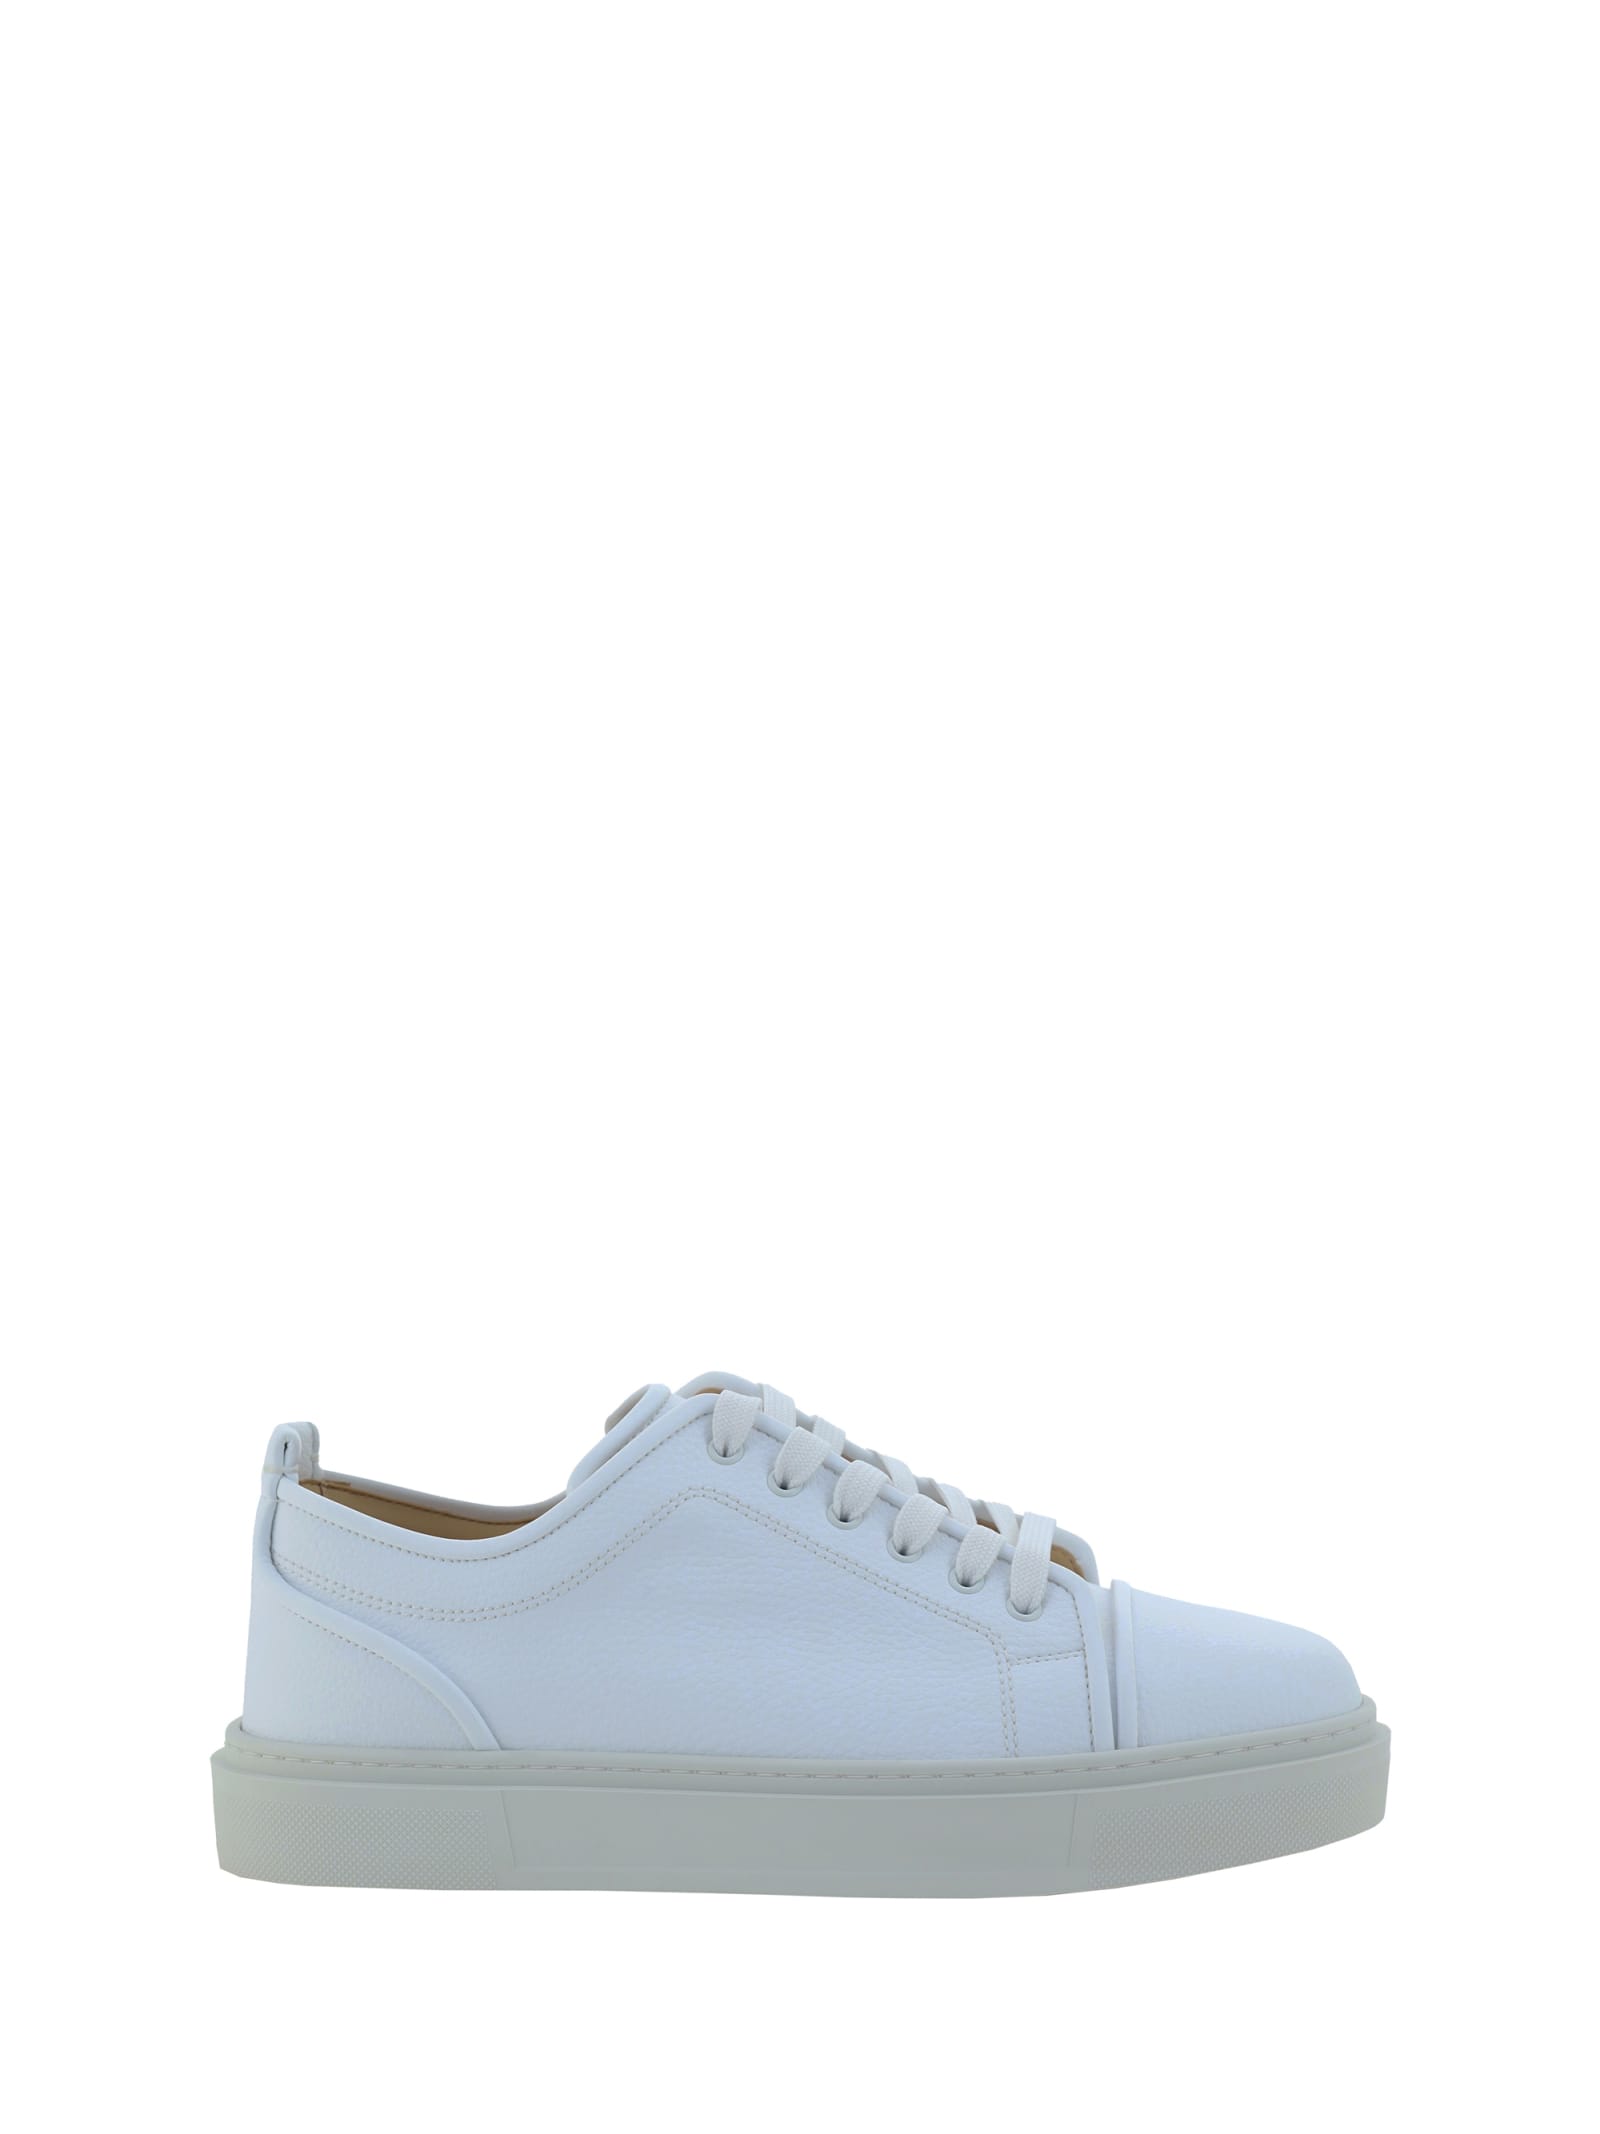 Christian Louboutin Adolon Kunior Sneakers In White